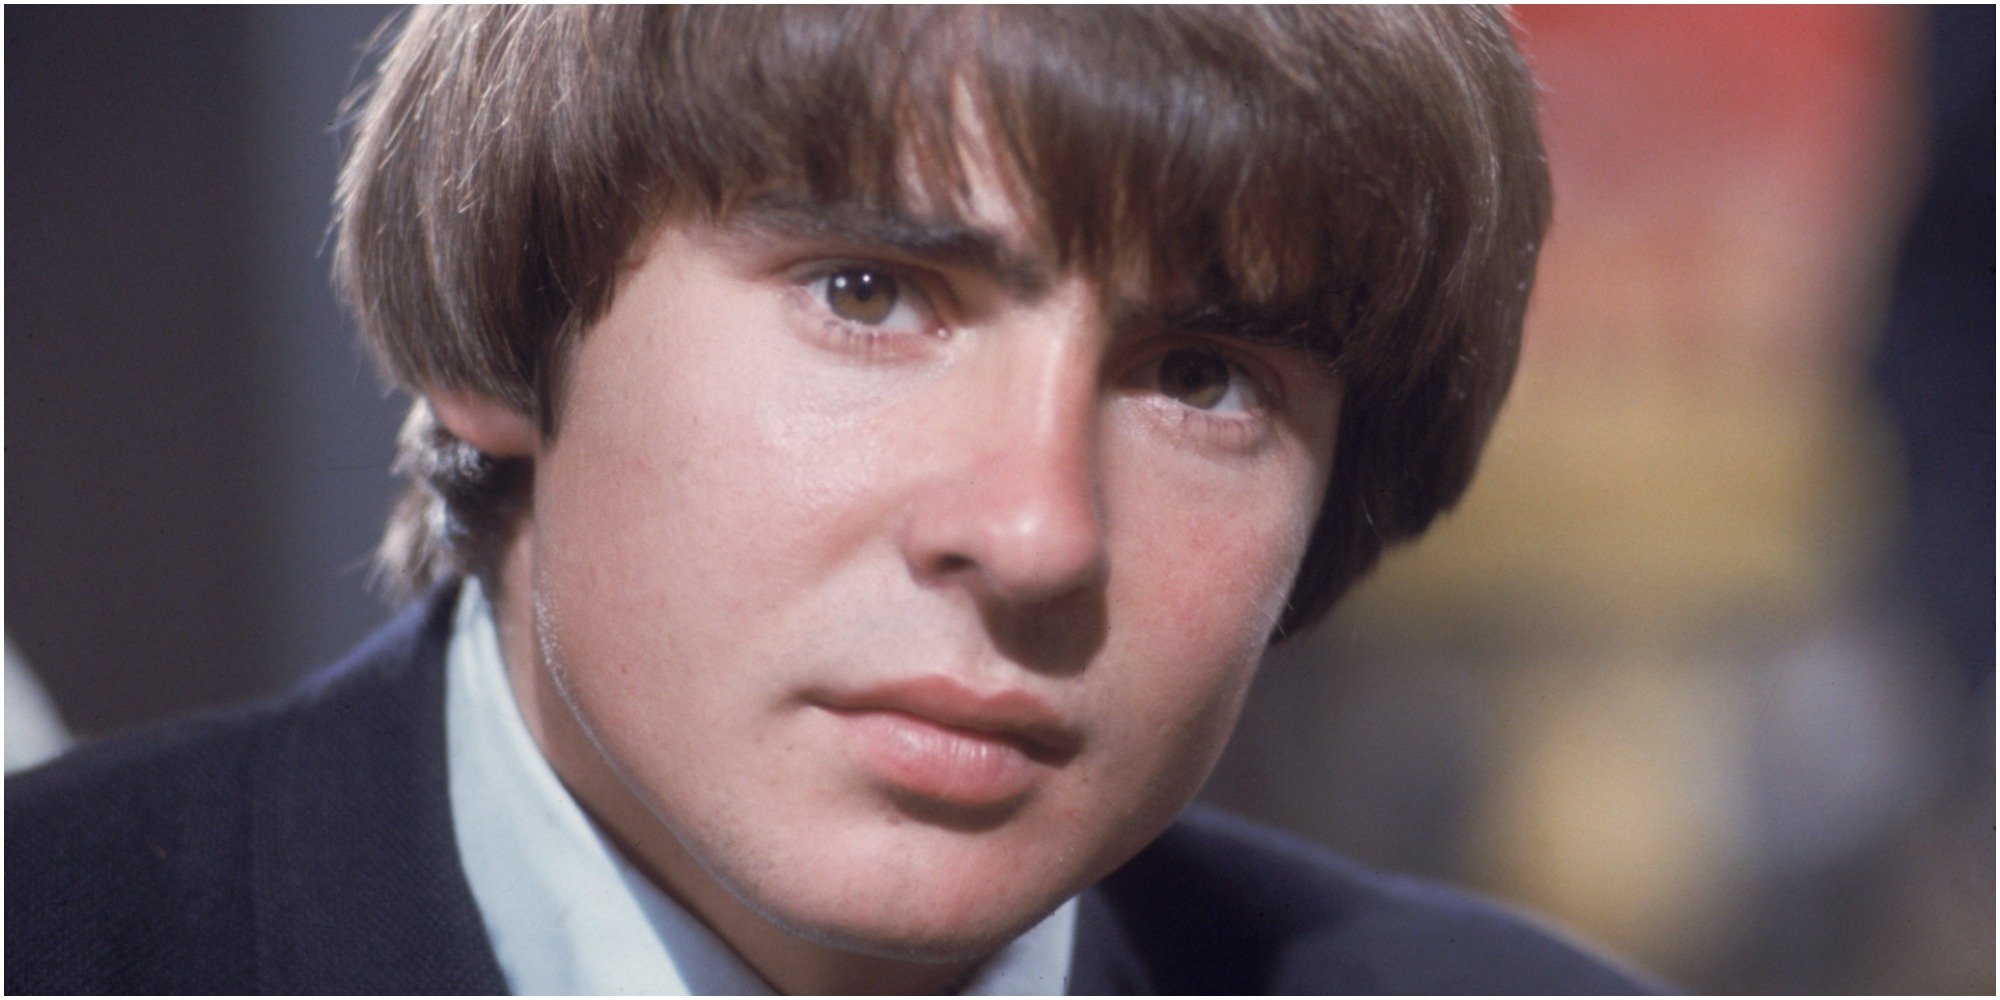 Davy Jones in a portrait taken in 1967.